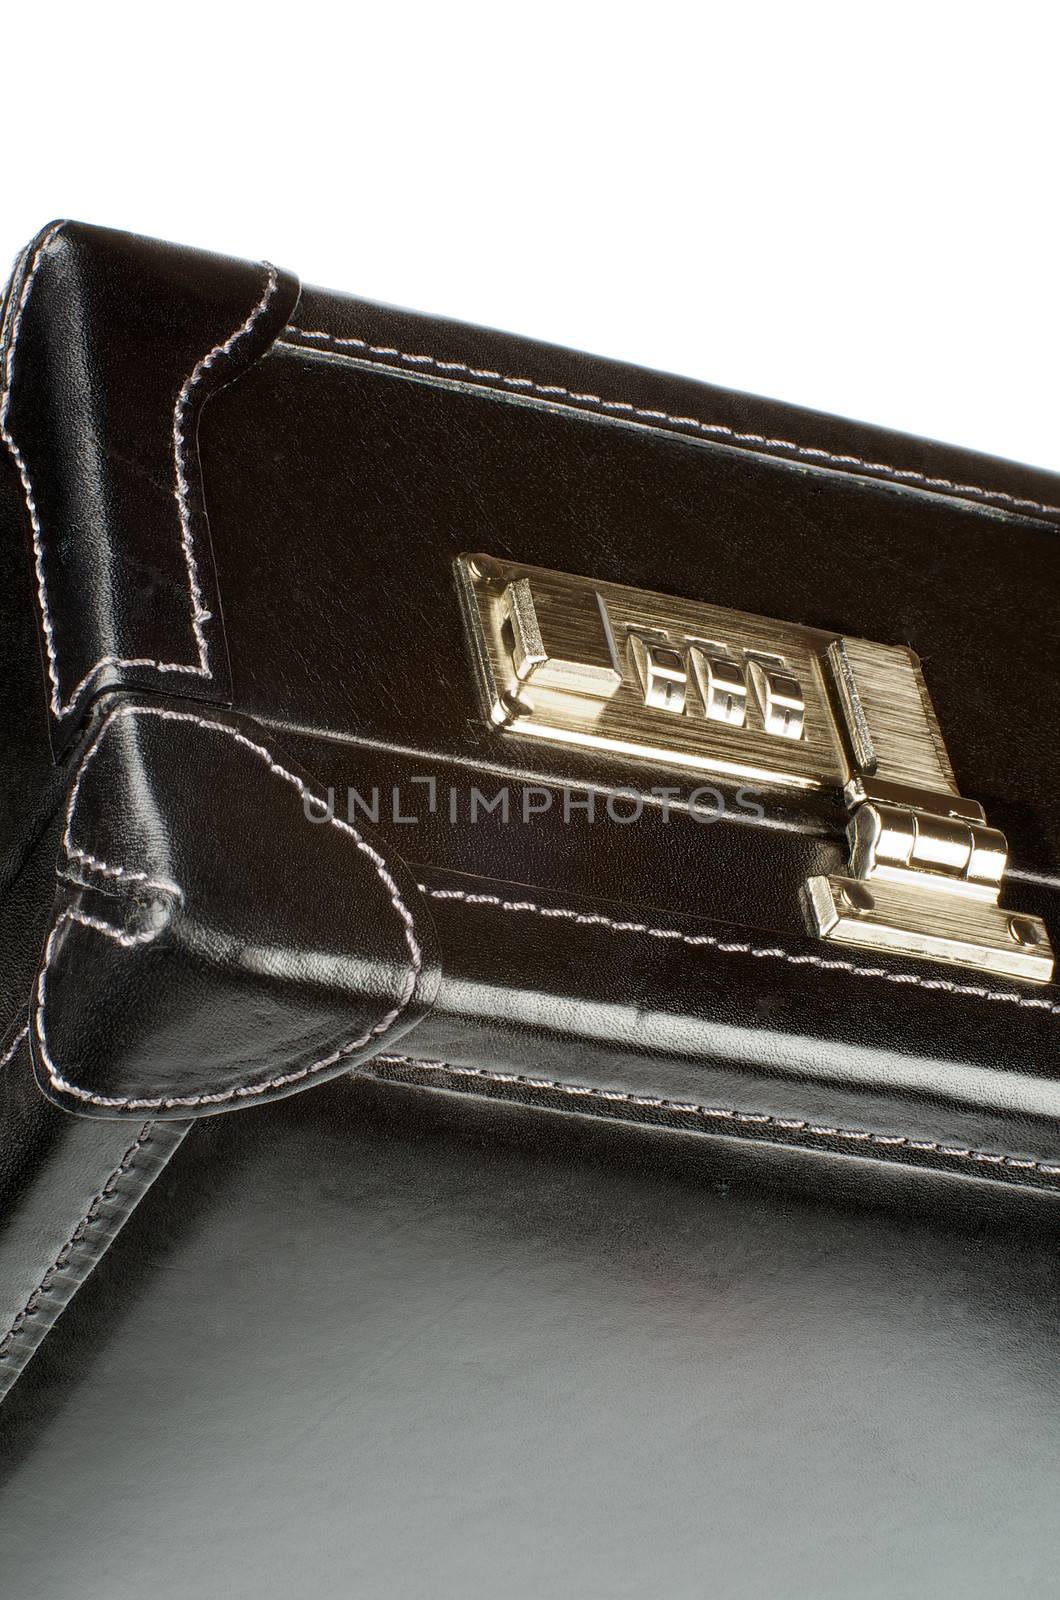 Briefcase Lock by zhekos